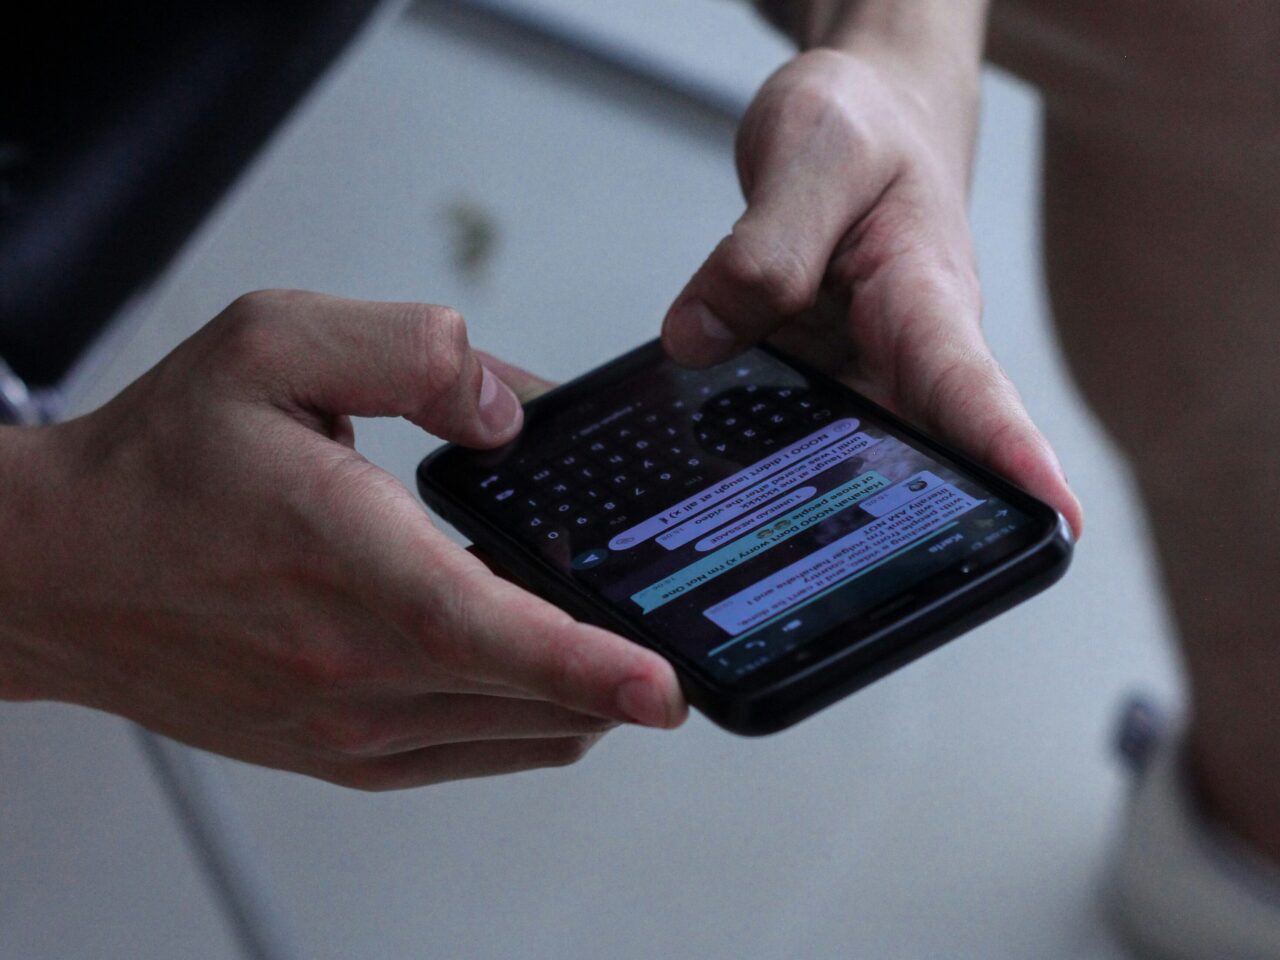 Osoba trzymająca i przeglądająca smartfon z klawiaturą QWERTY i otwartym ekranem czatu.